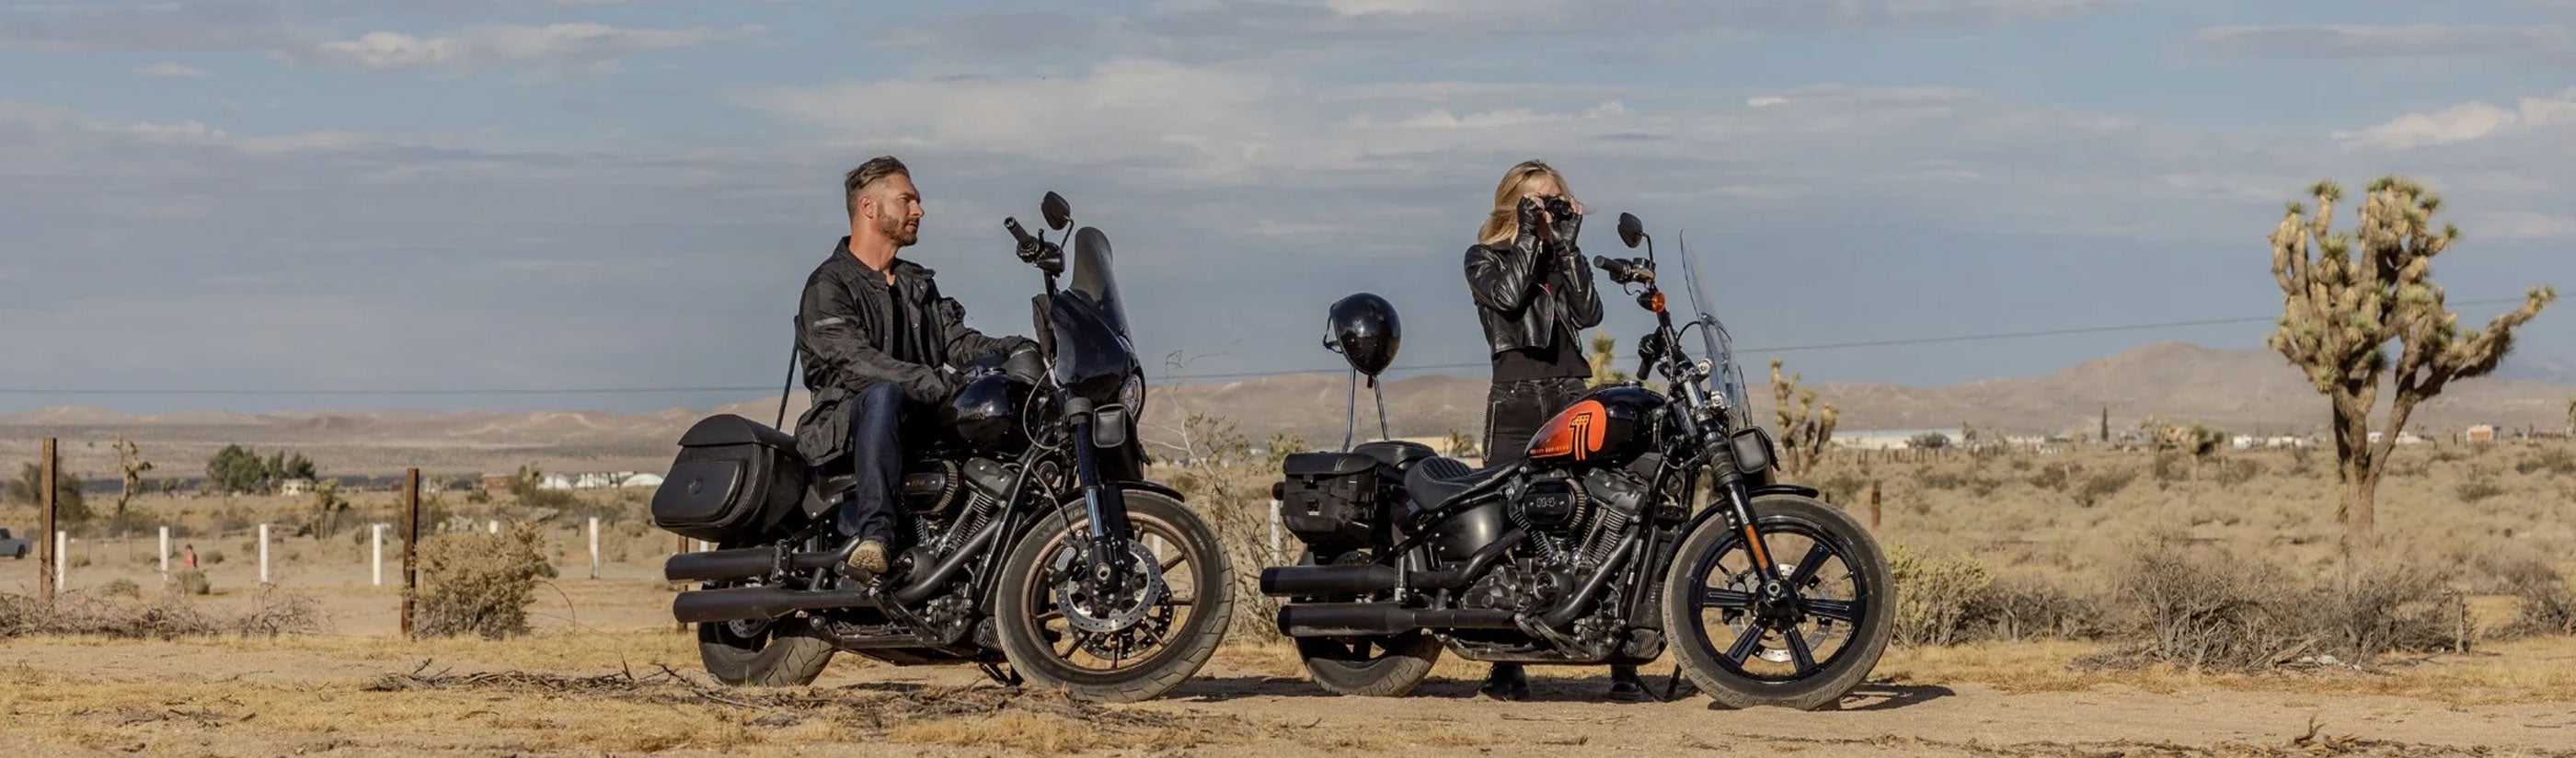 Harley Sportster Tour Packs